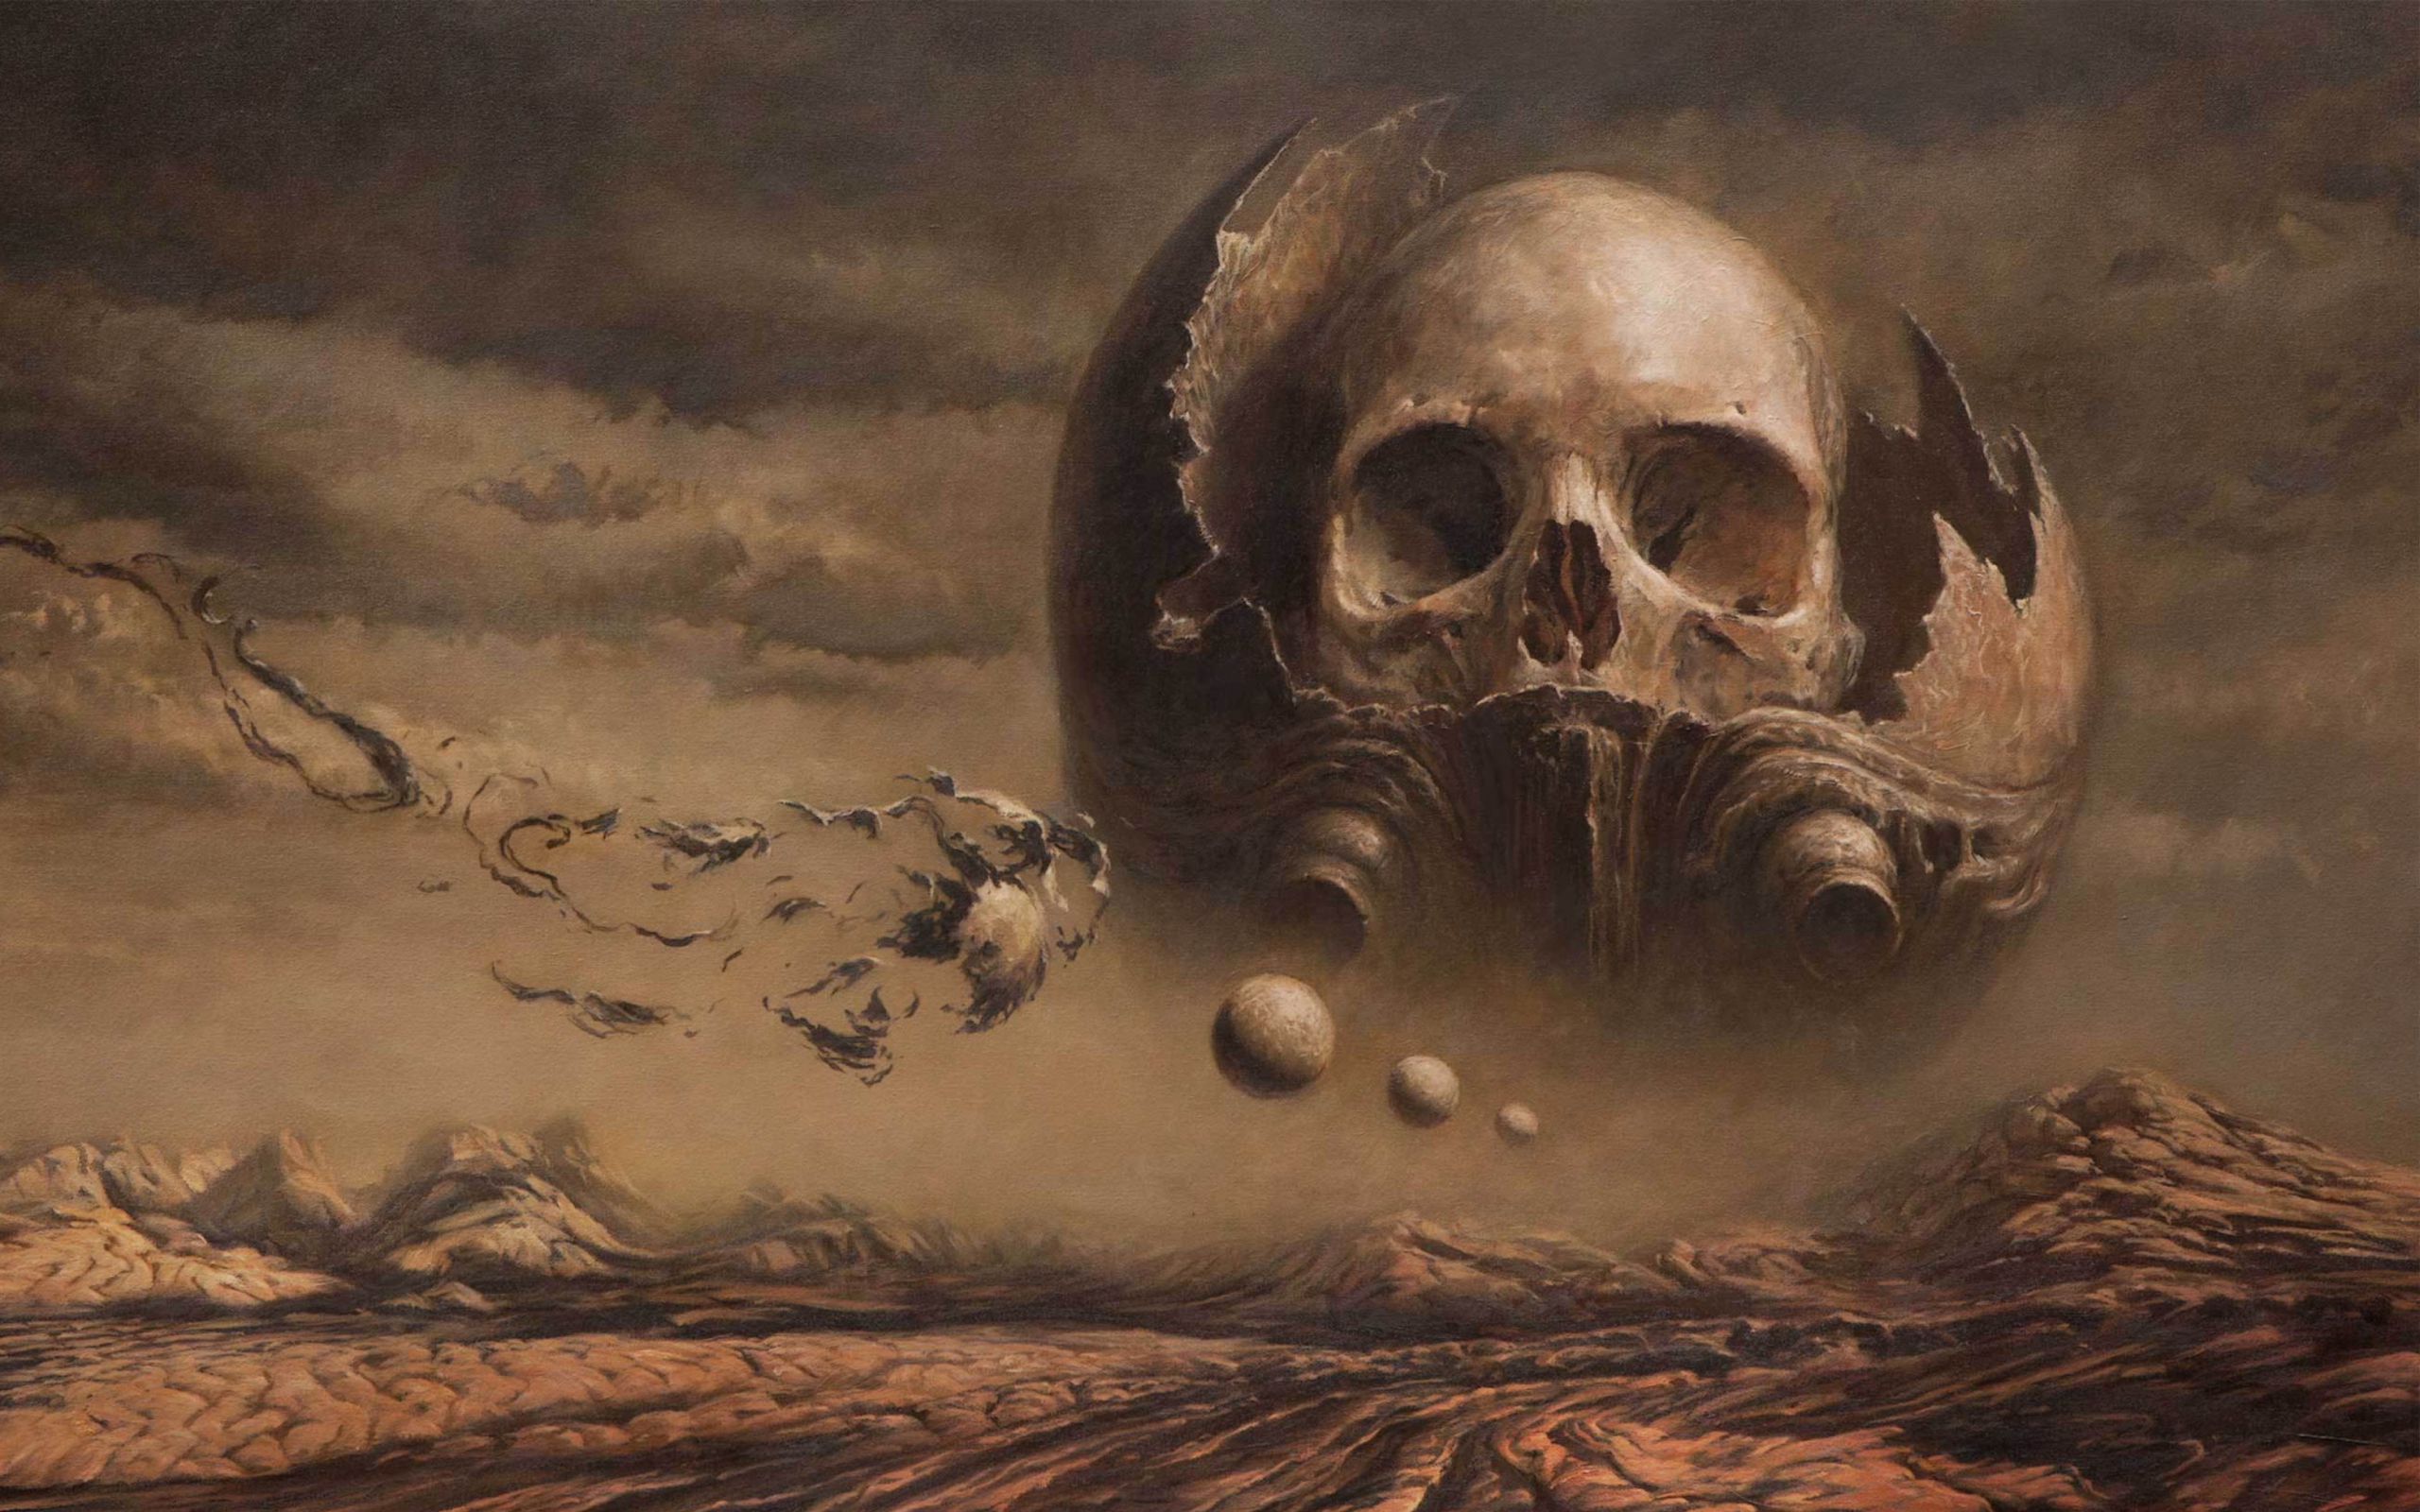 Skull Desert wallpaper 2560x1600